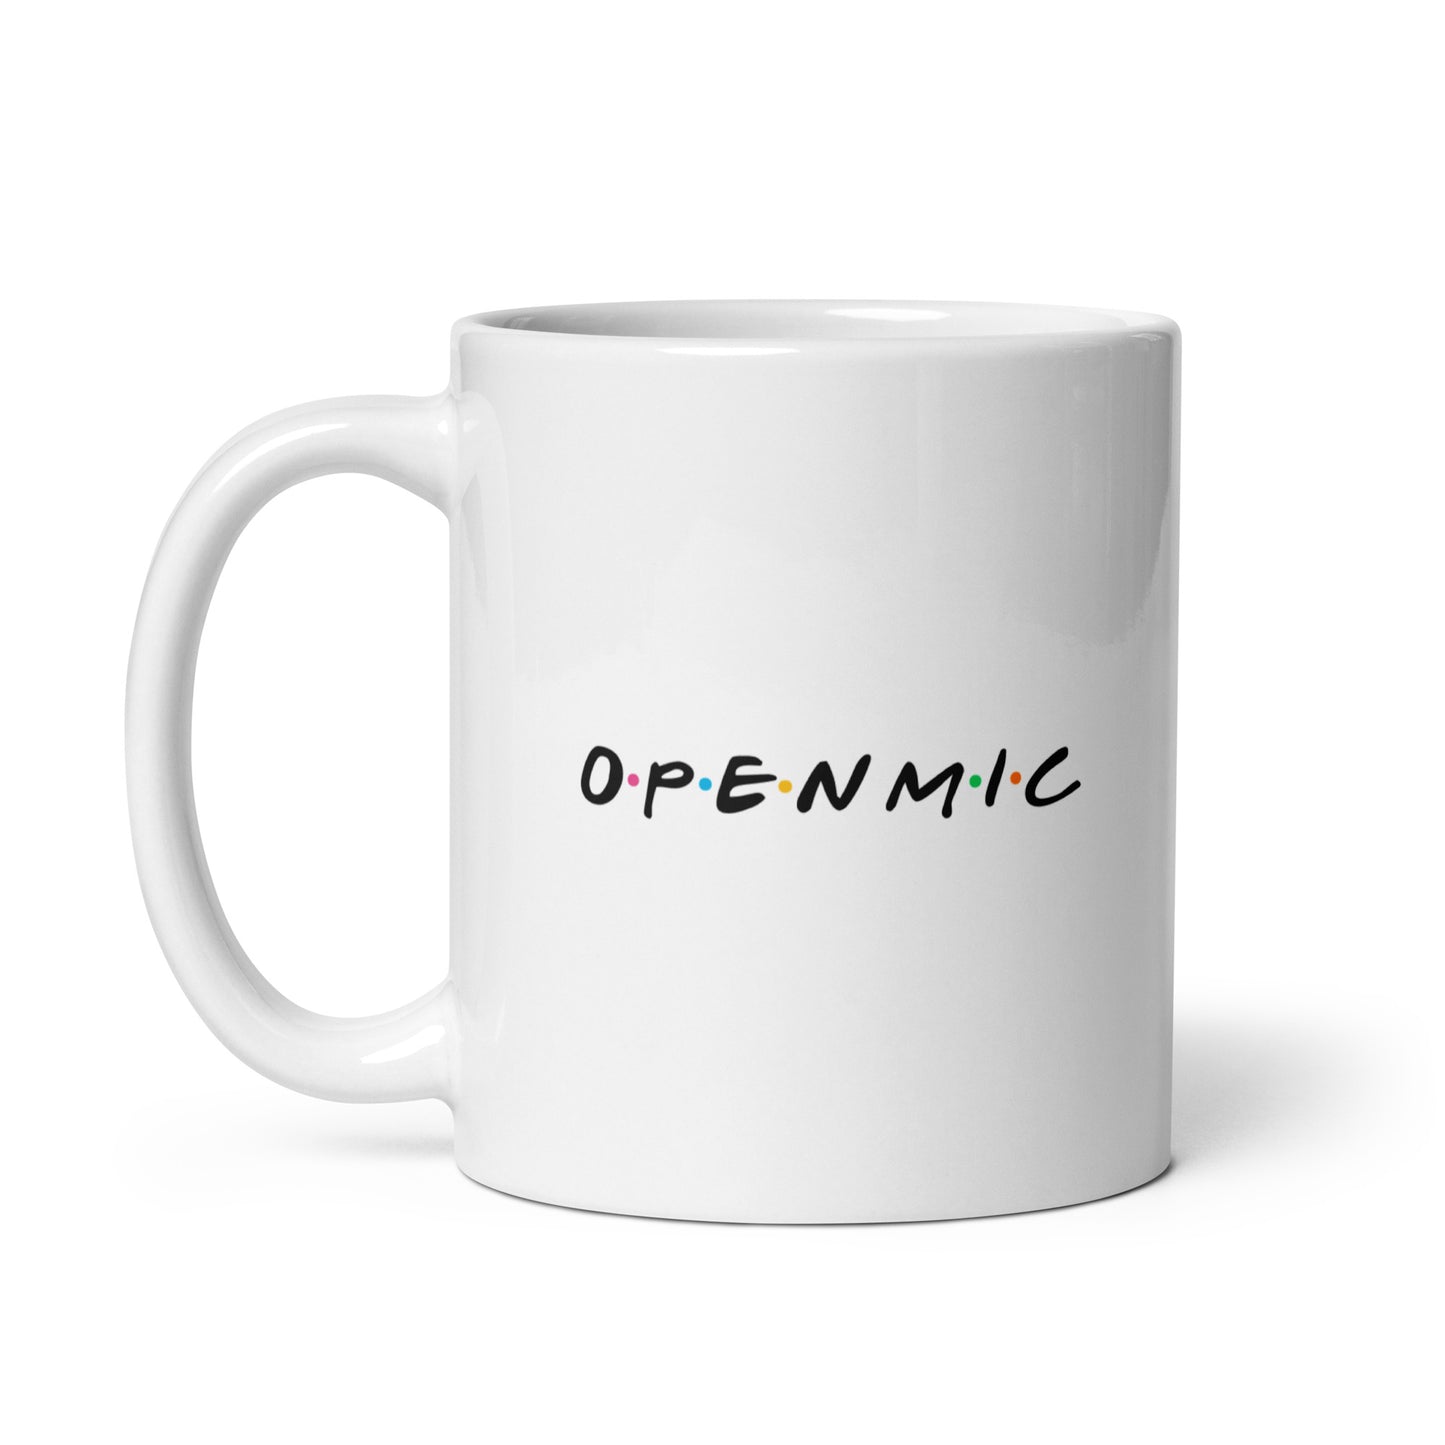 Open Mic Ceramic Mug - 11 fl oz (Paperback)